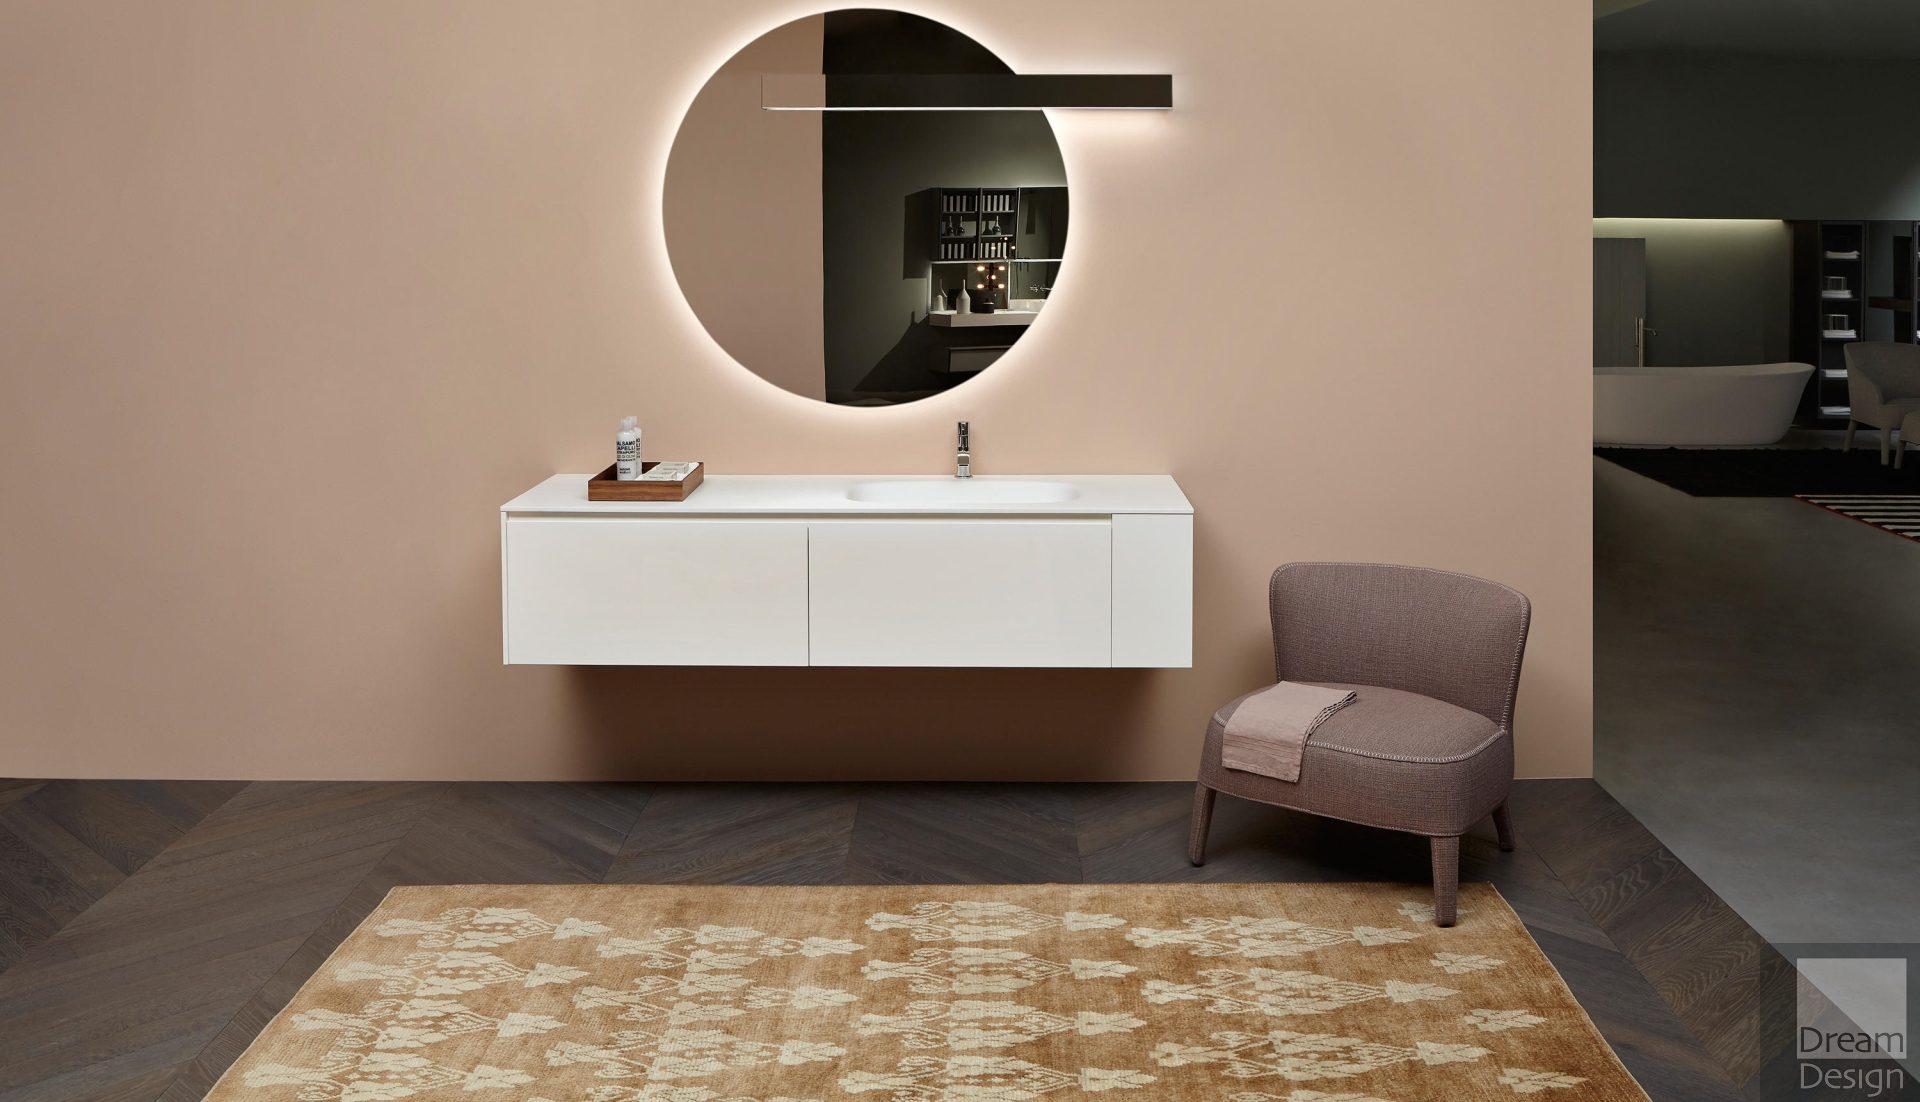 Antonio Lupi Piana - Dream Design Interiors Ltd